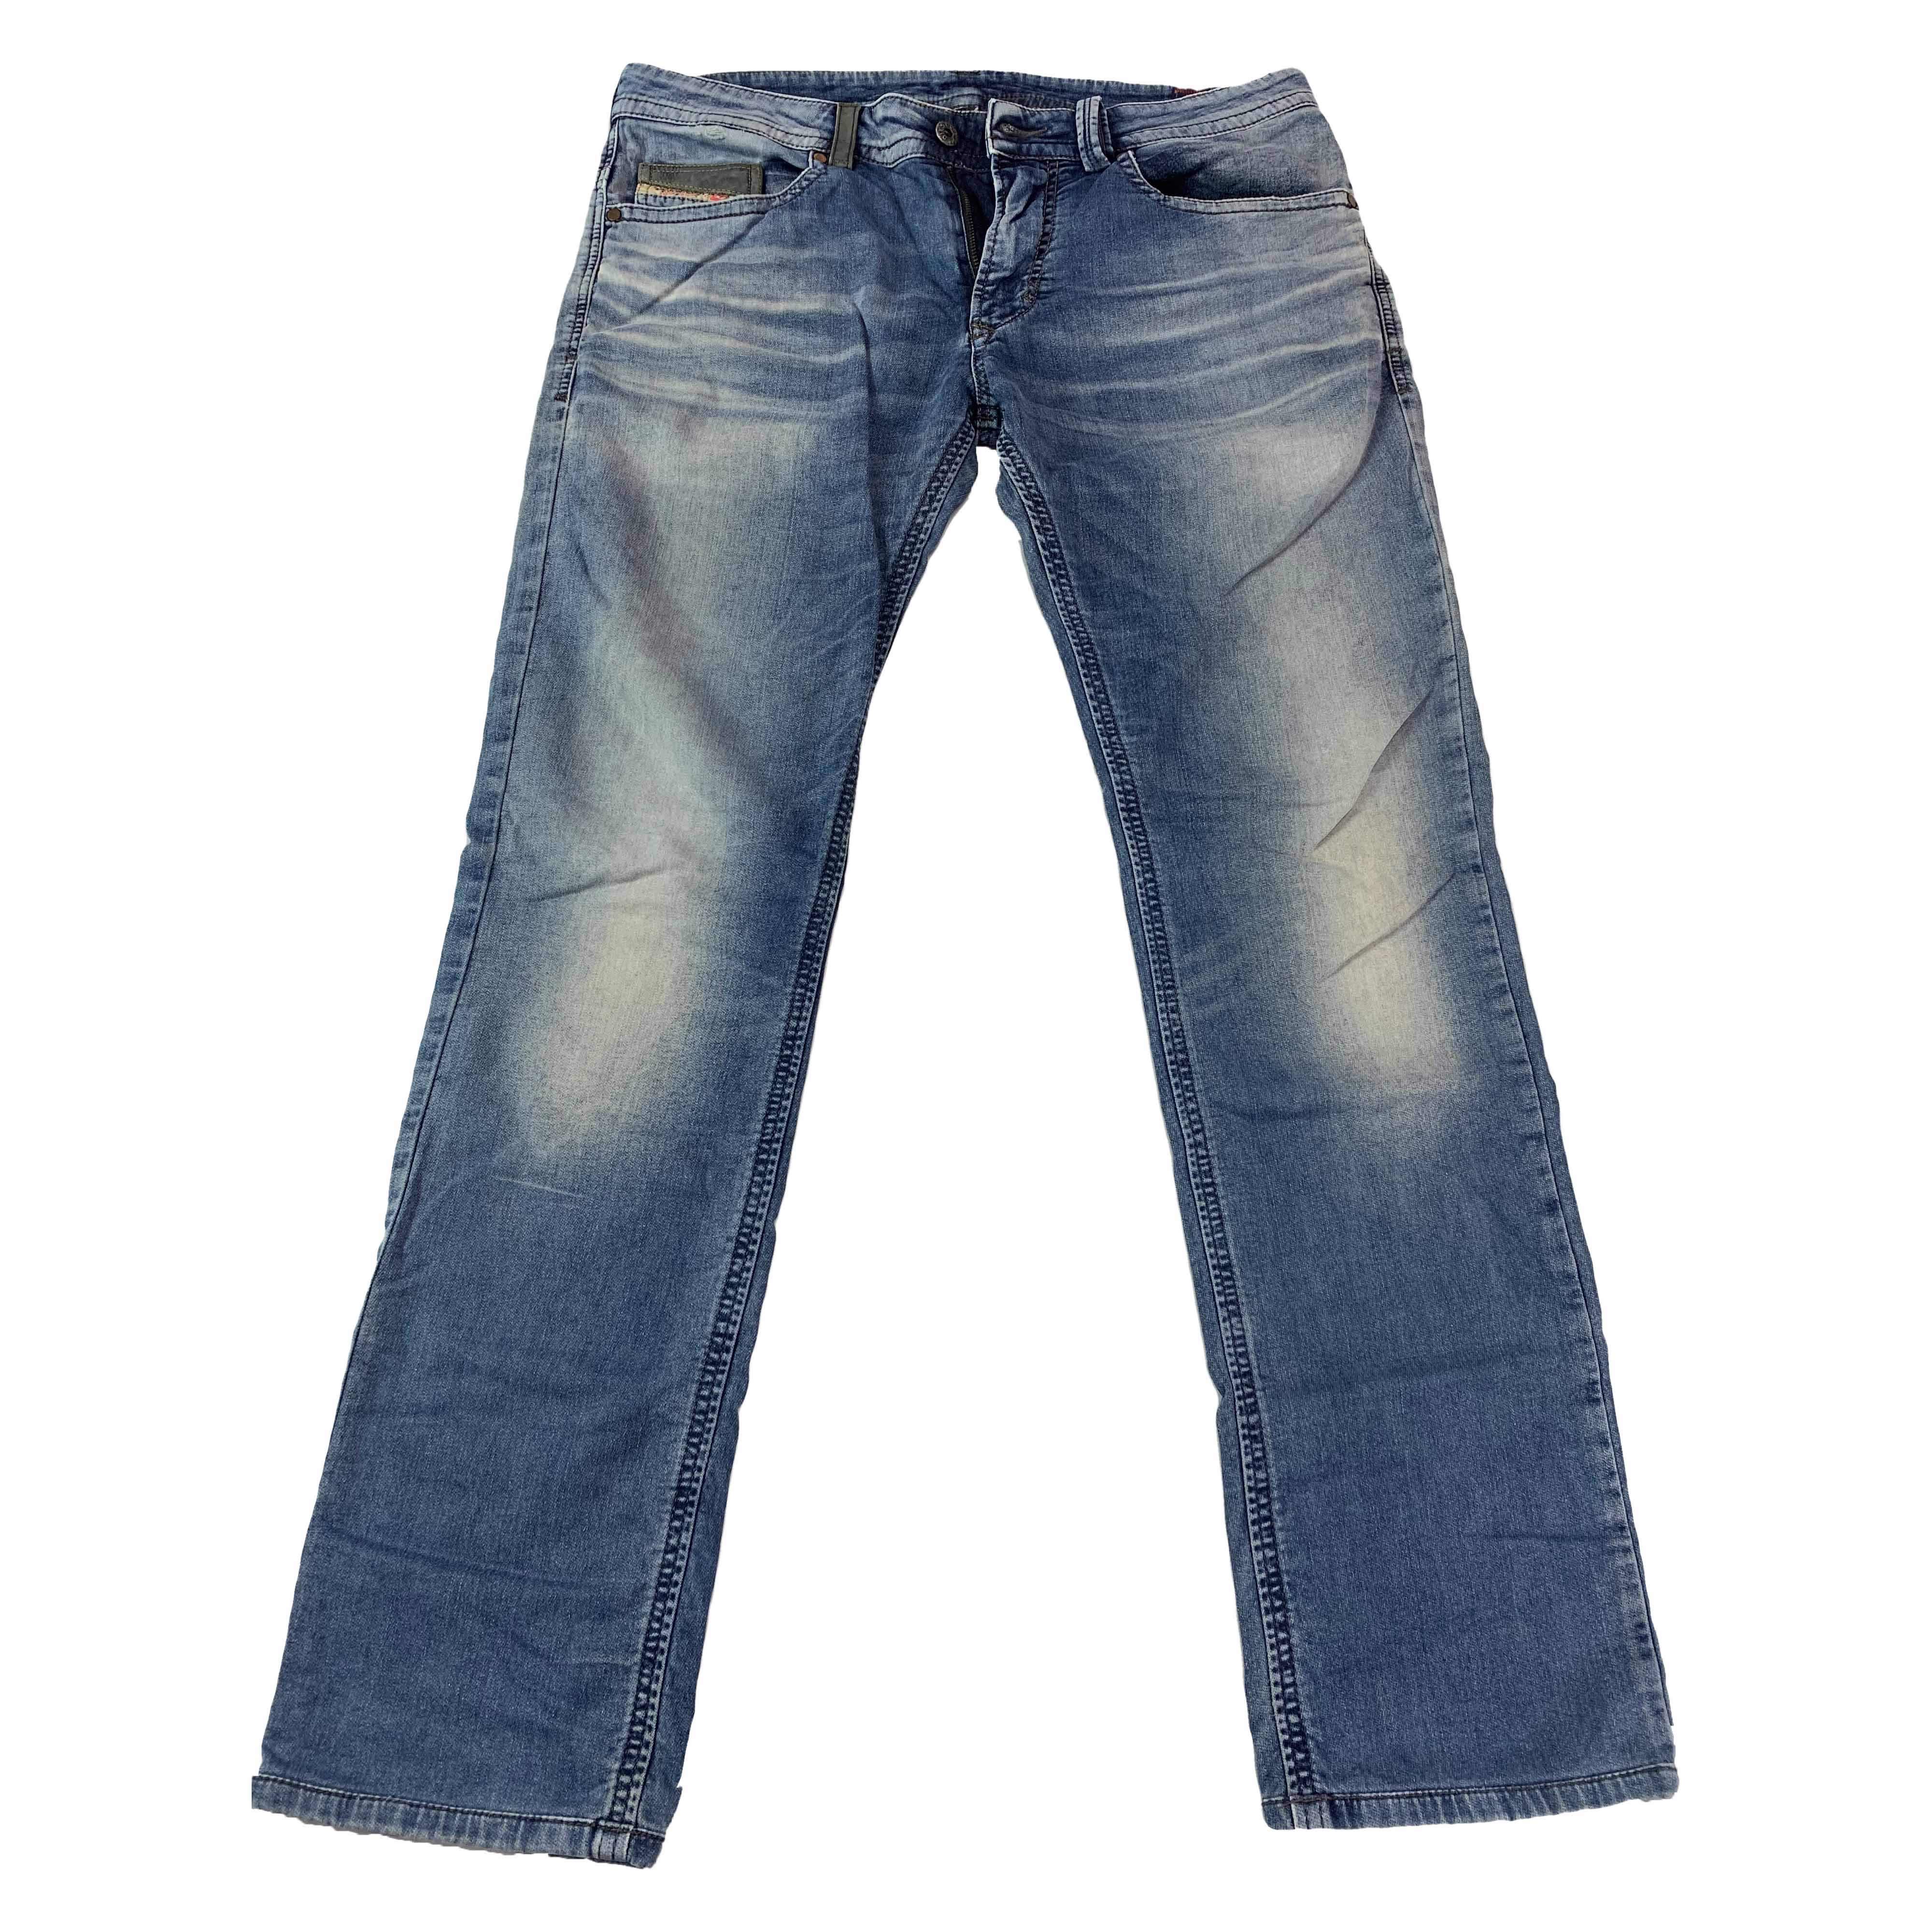 [Diesel] THAVAR Light Denim Jeans - Size 32